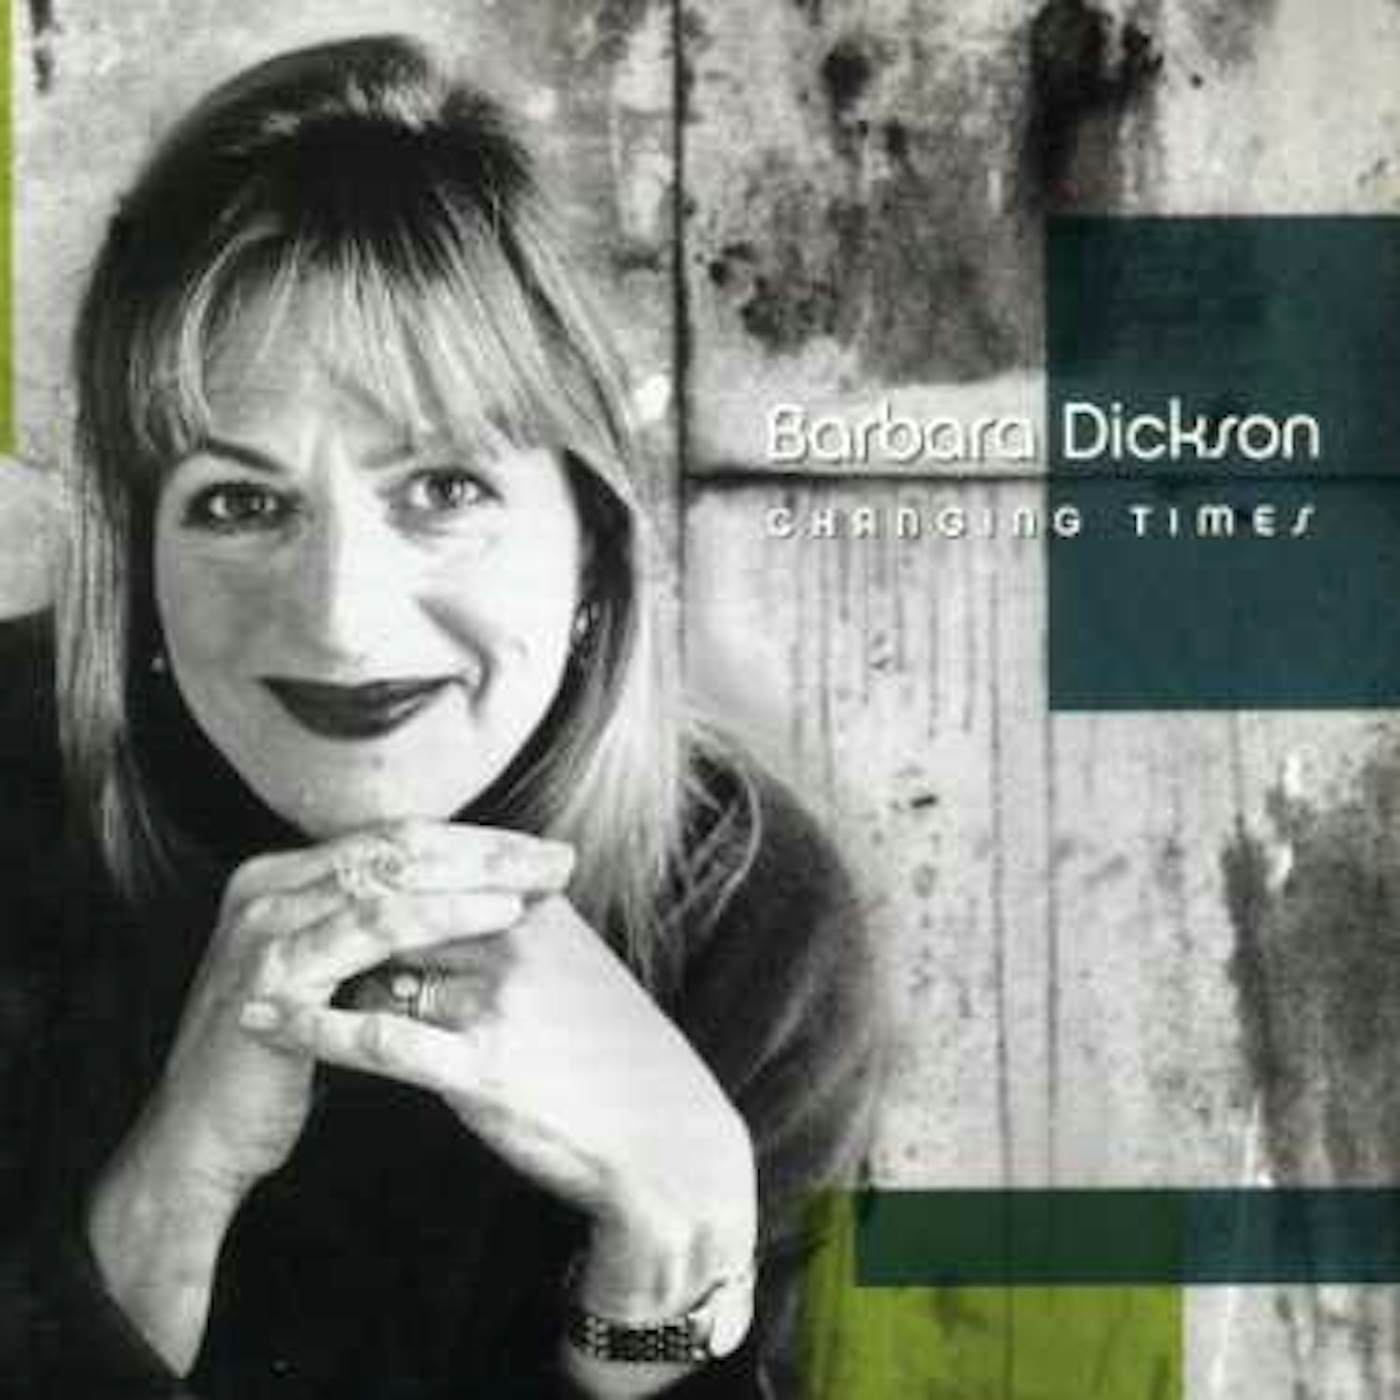 Barbara Dickson CHANGING TIMES CD